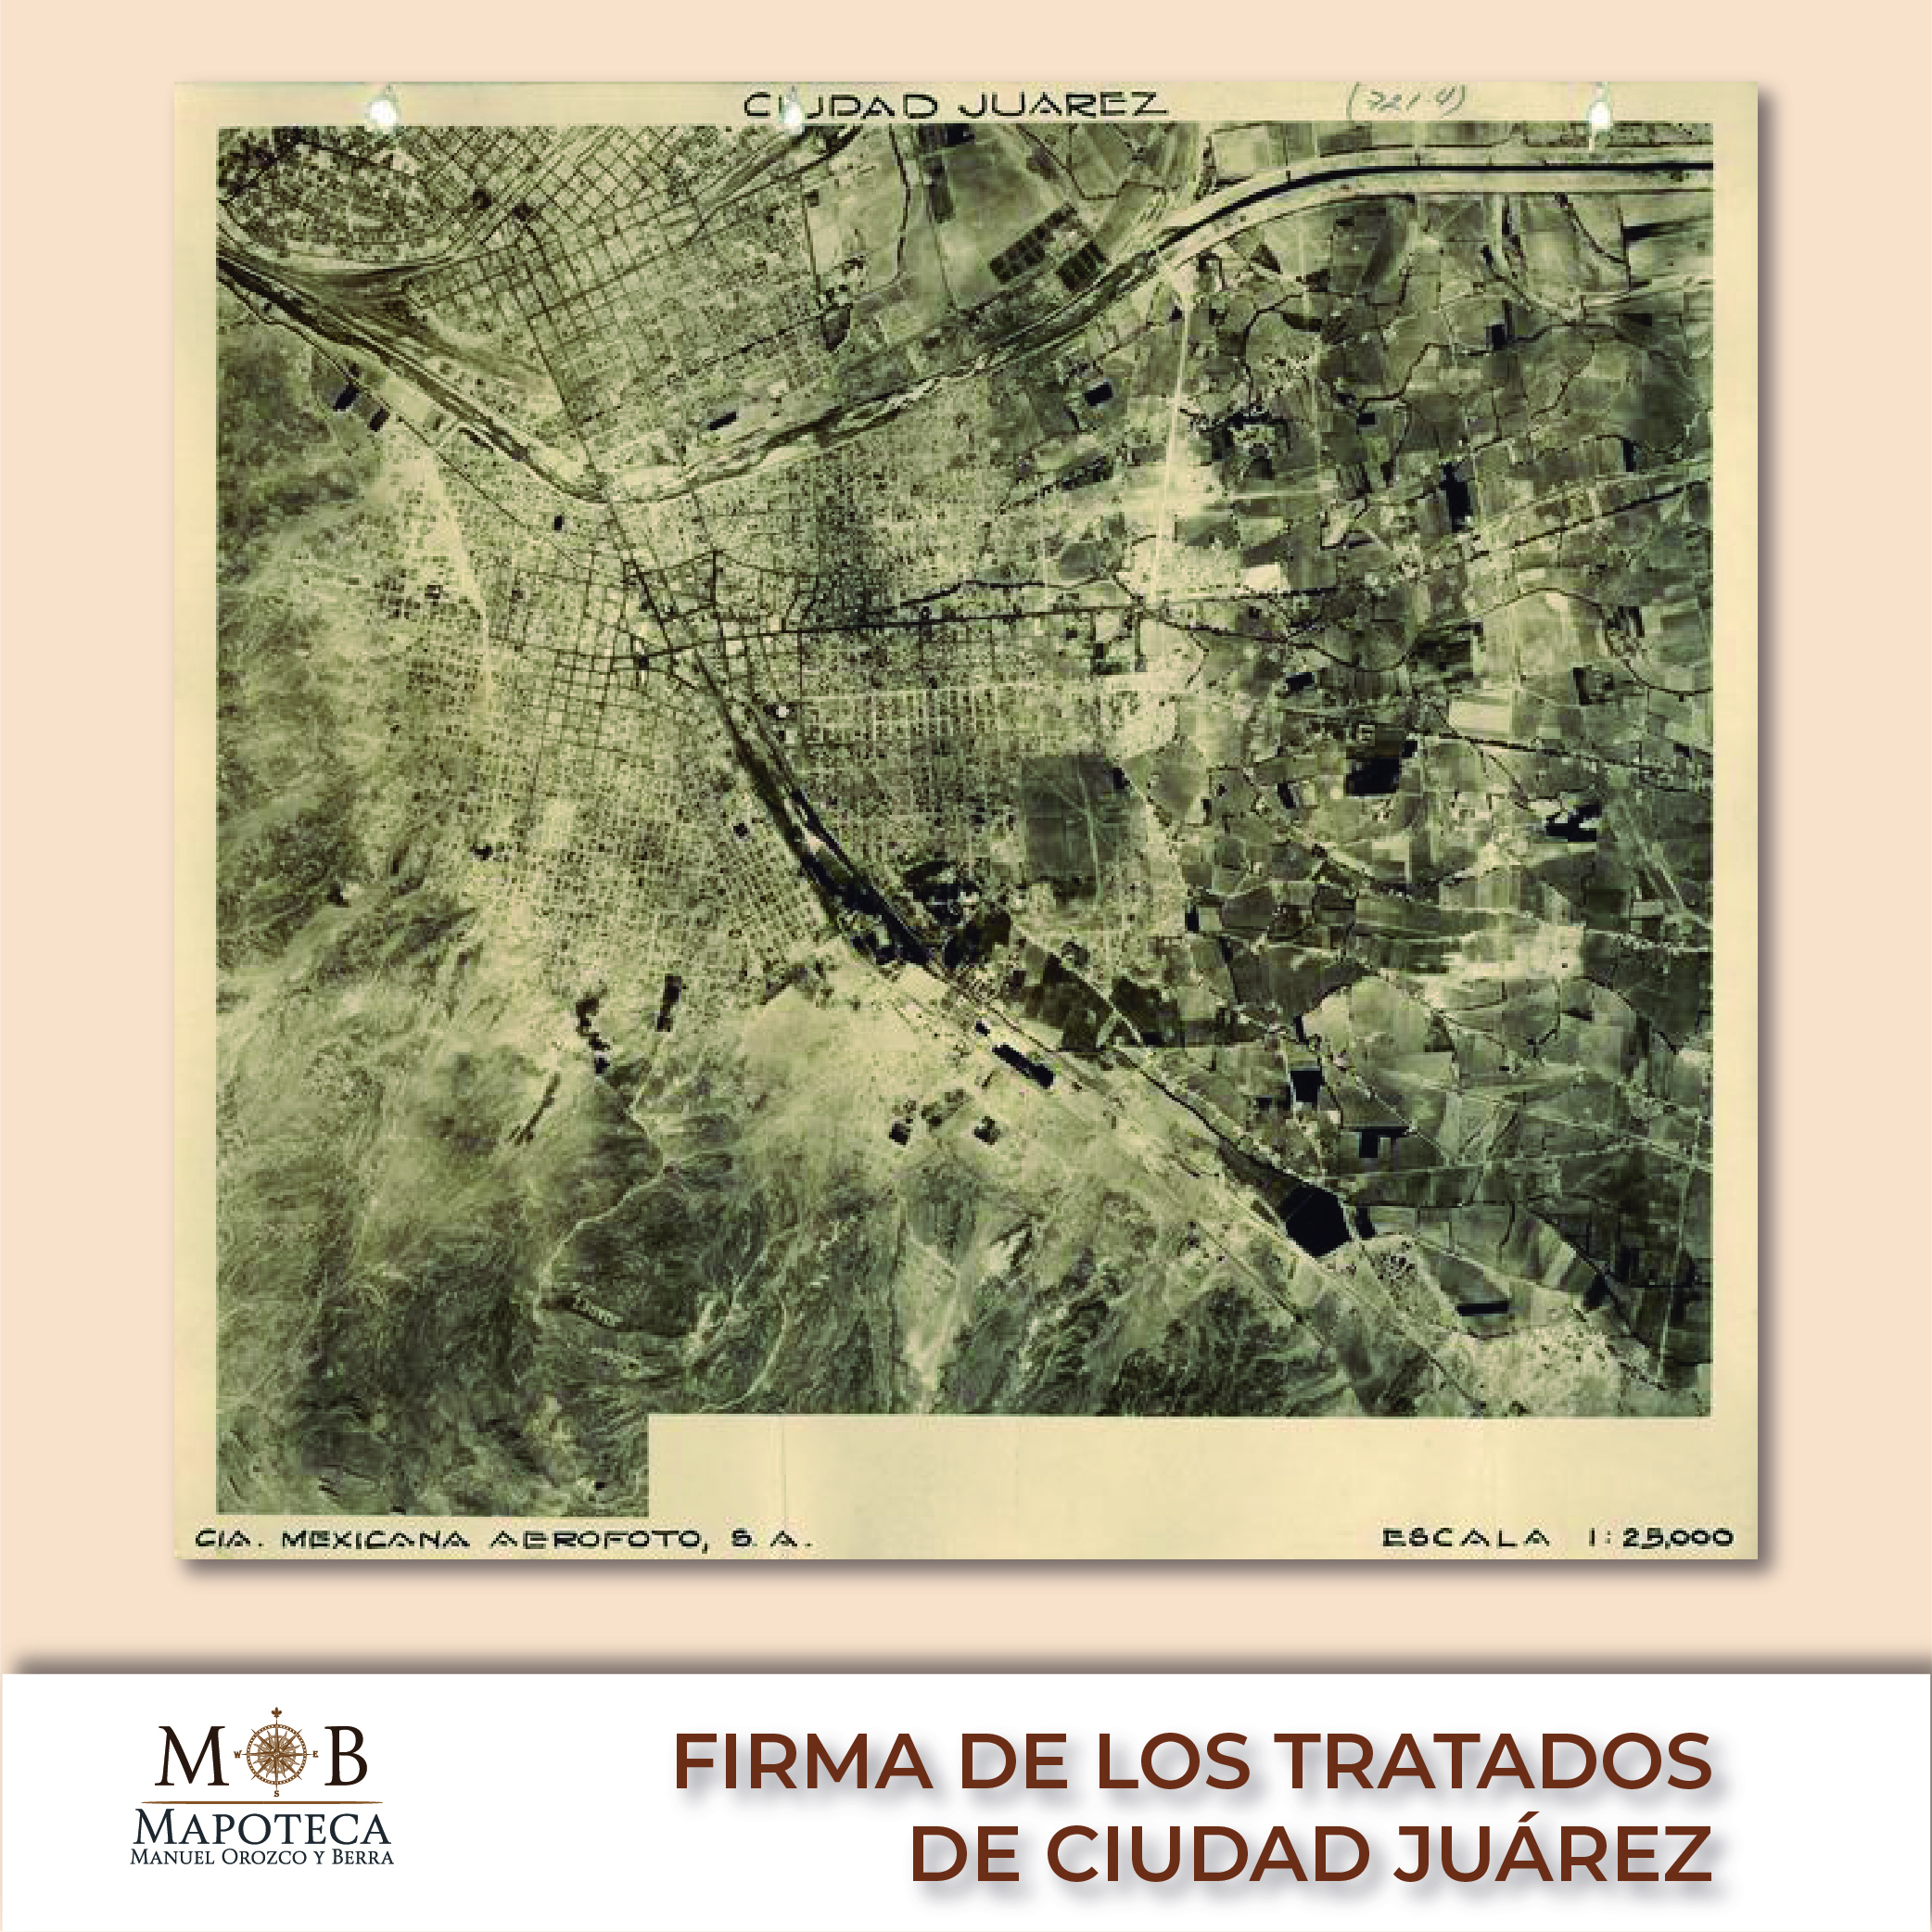 Para conmemorar un año más de la firma de los Tratados de Ciudad Juárez, la Mapoteca Manuel Orozco y Berra presenta esta imagen titulada: “Fotografía aérea de Ciudad Juárez”. 